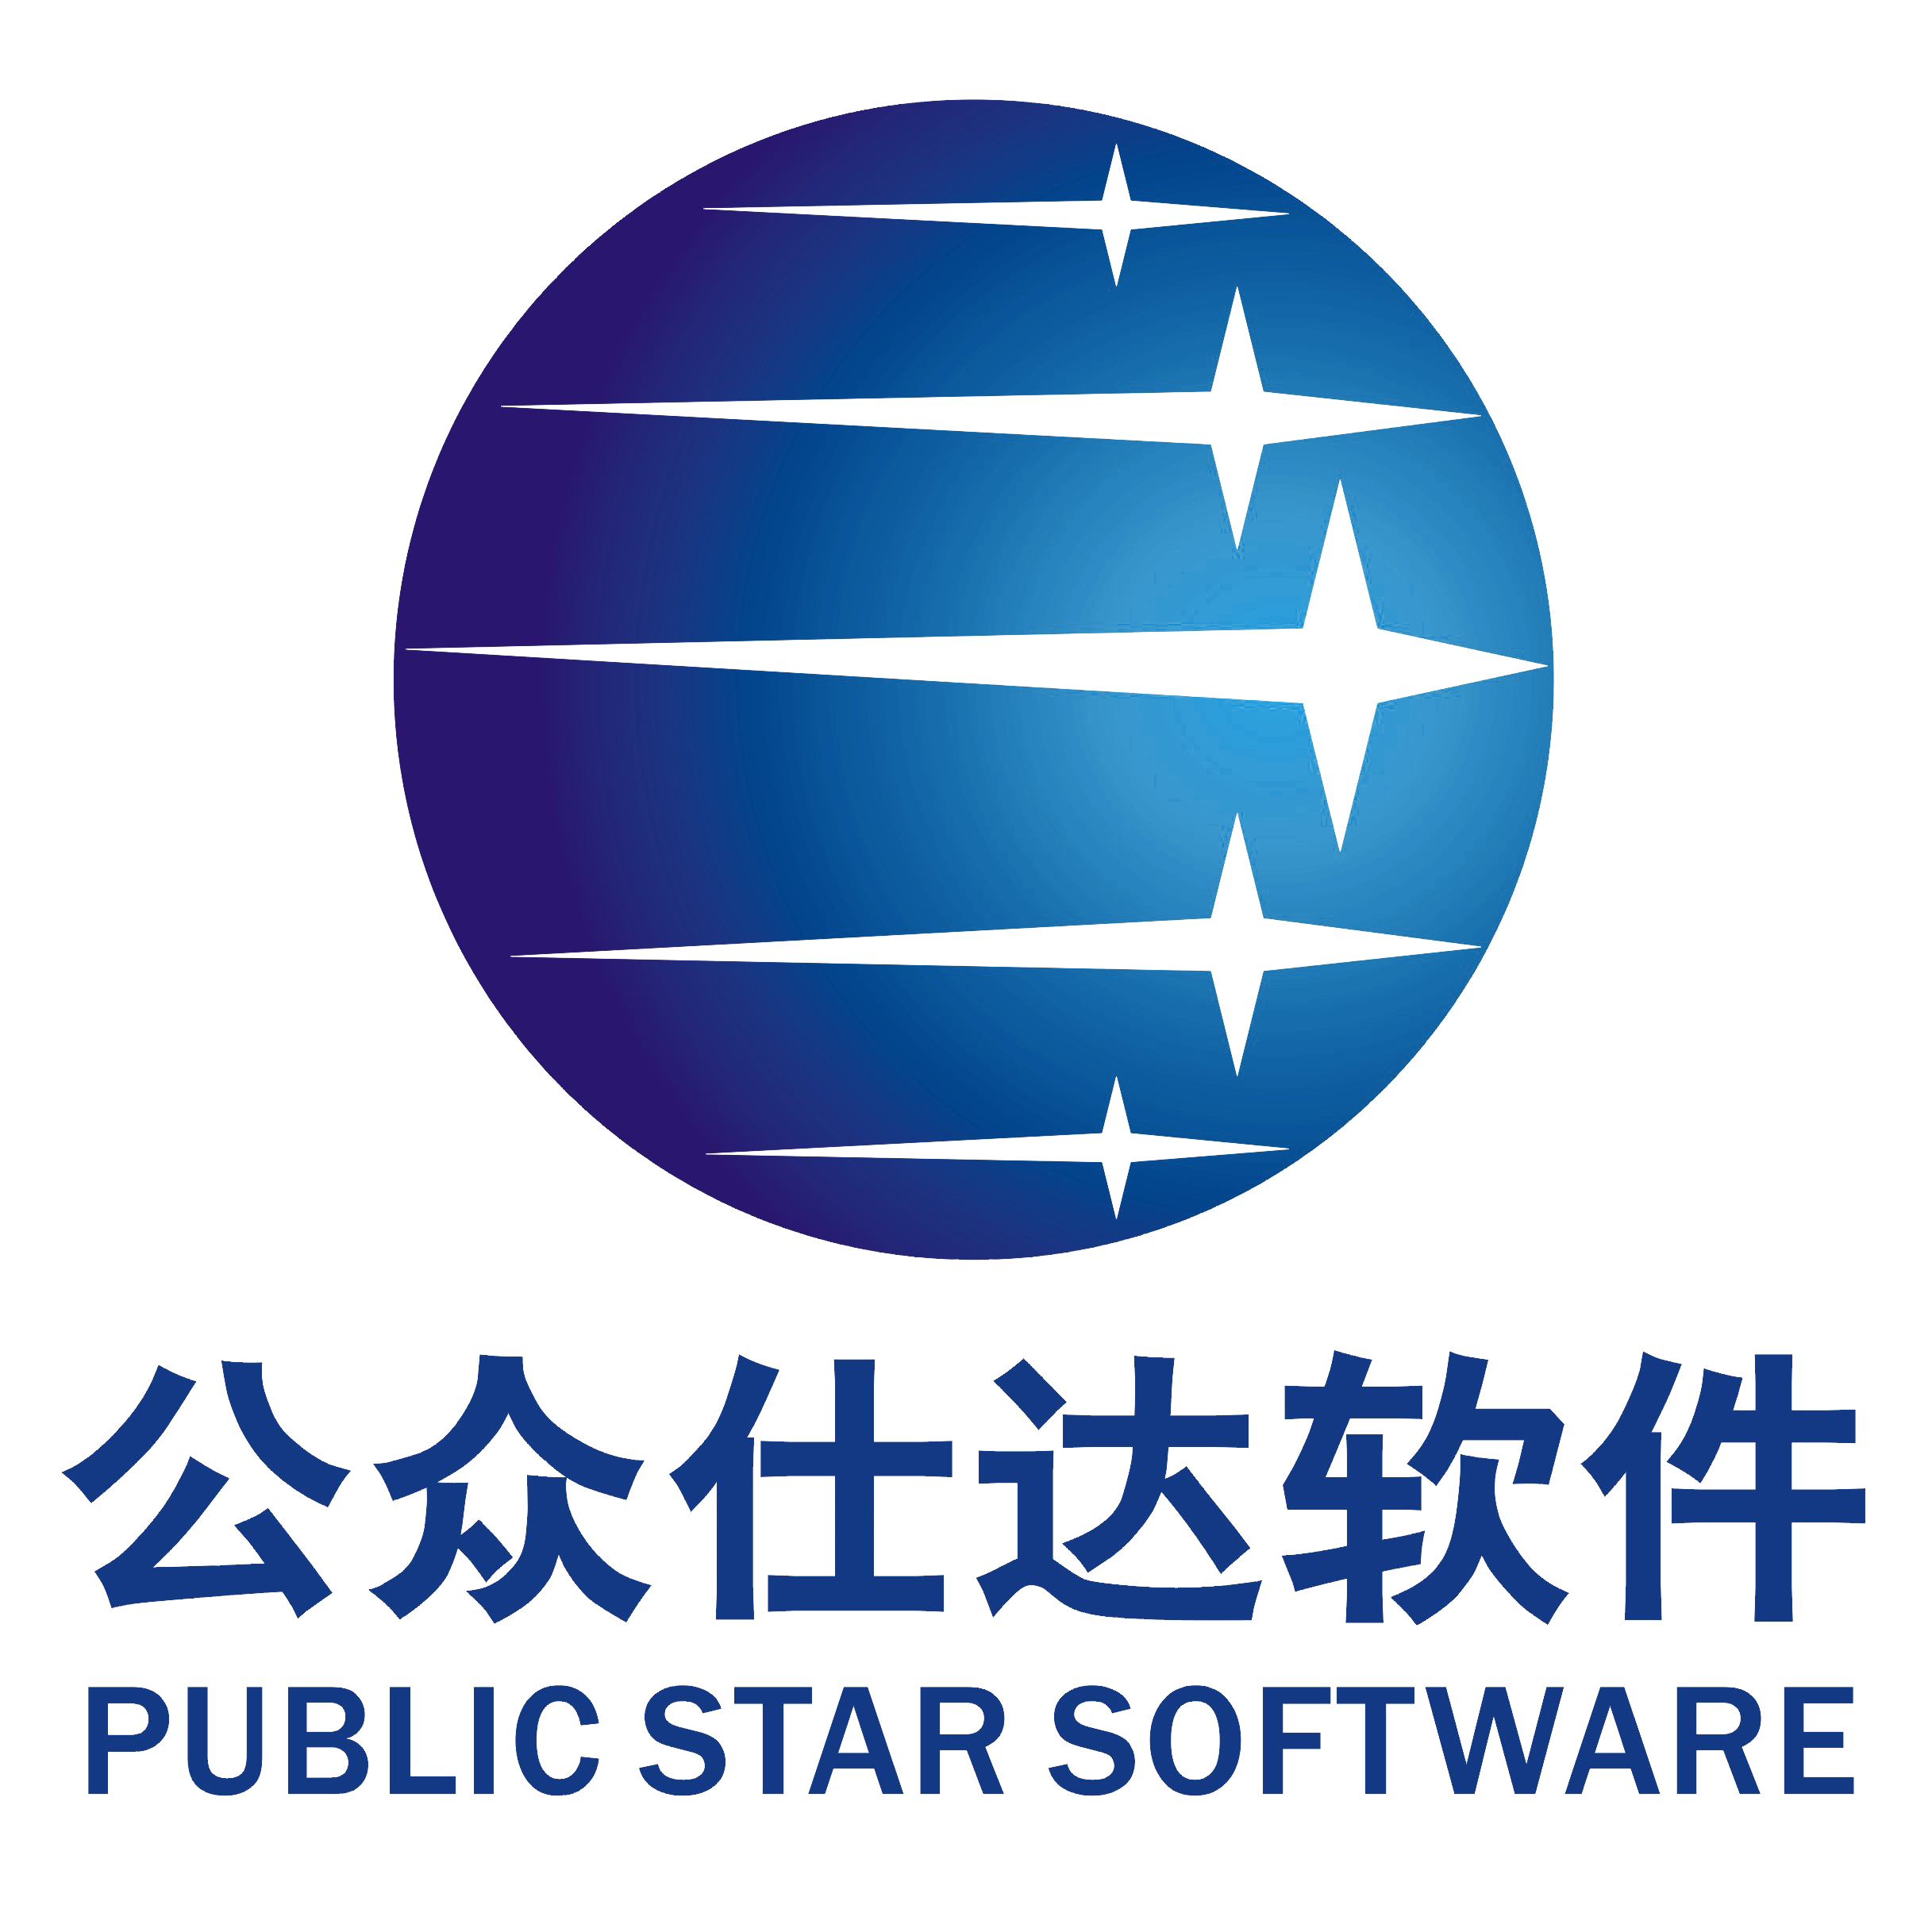 陕西公众仕达软件科技有限公司